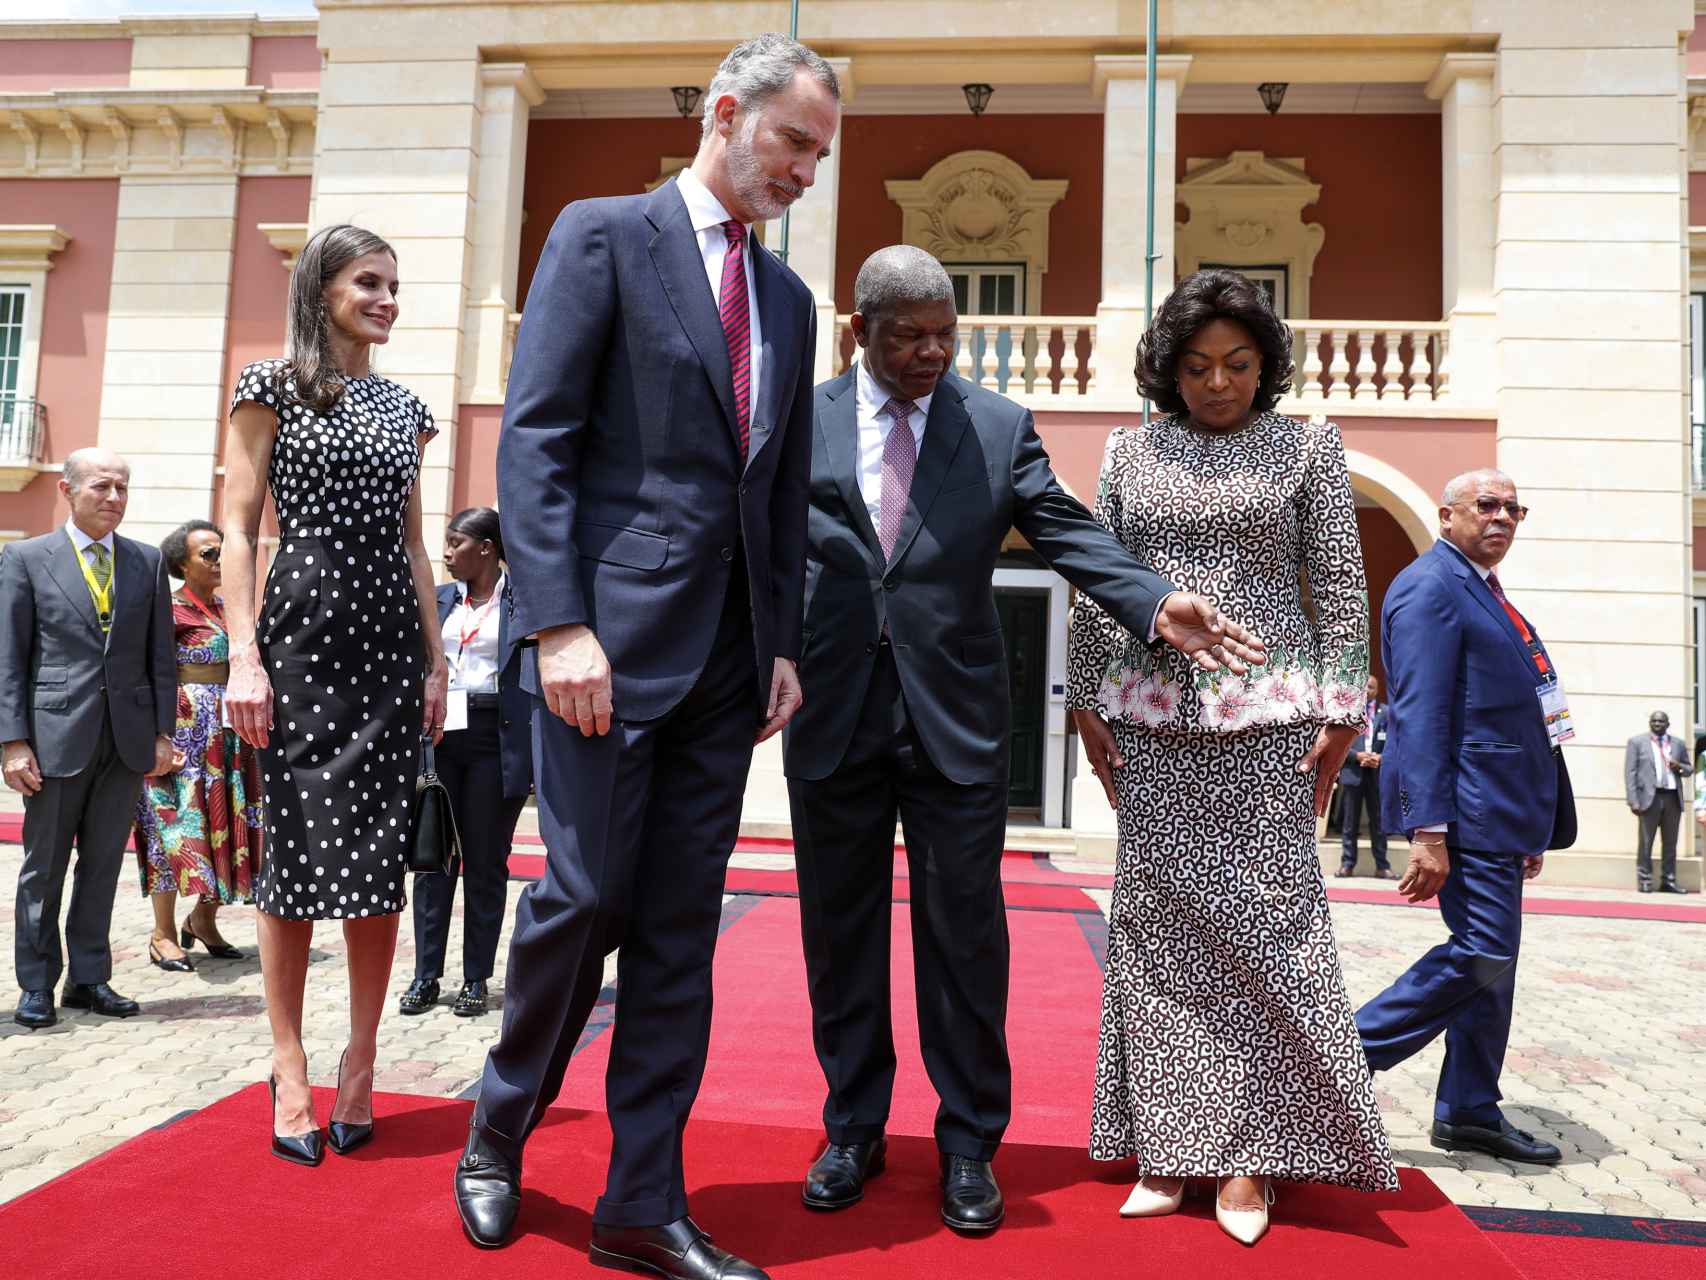 El presidente de Angola indica a Felipe VI dónde debe colocarse para la foto oficial.